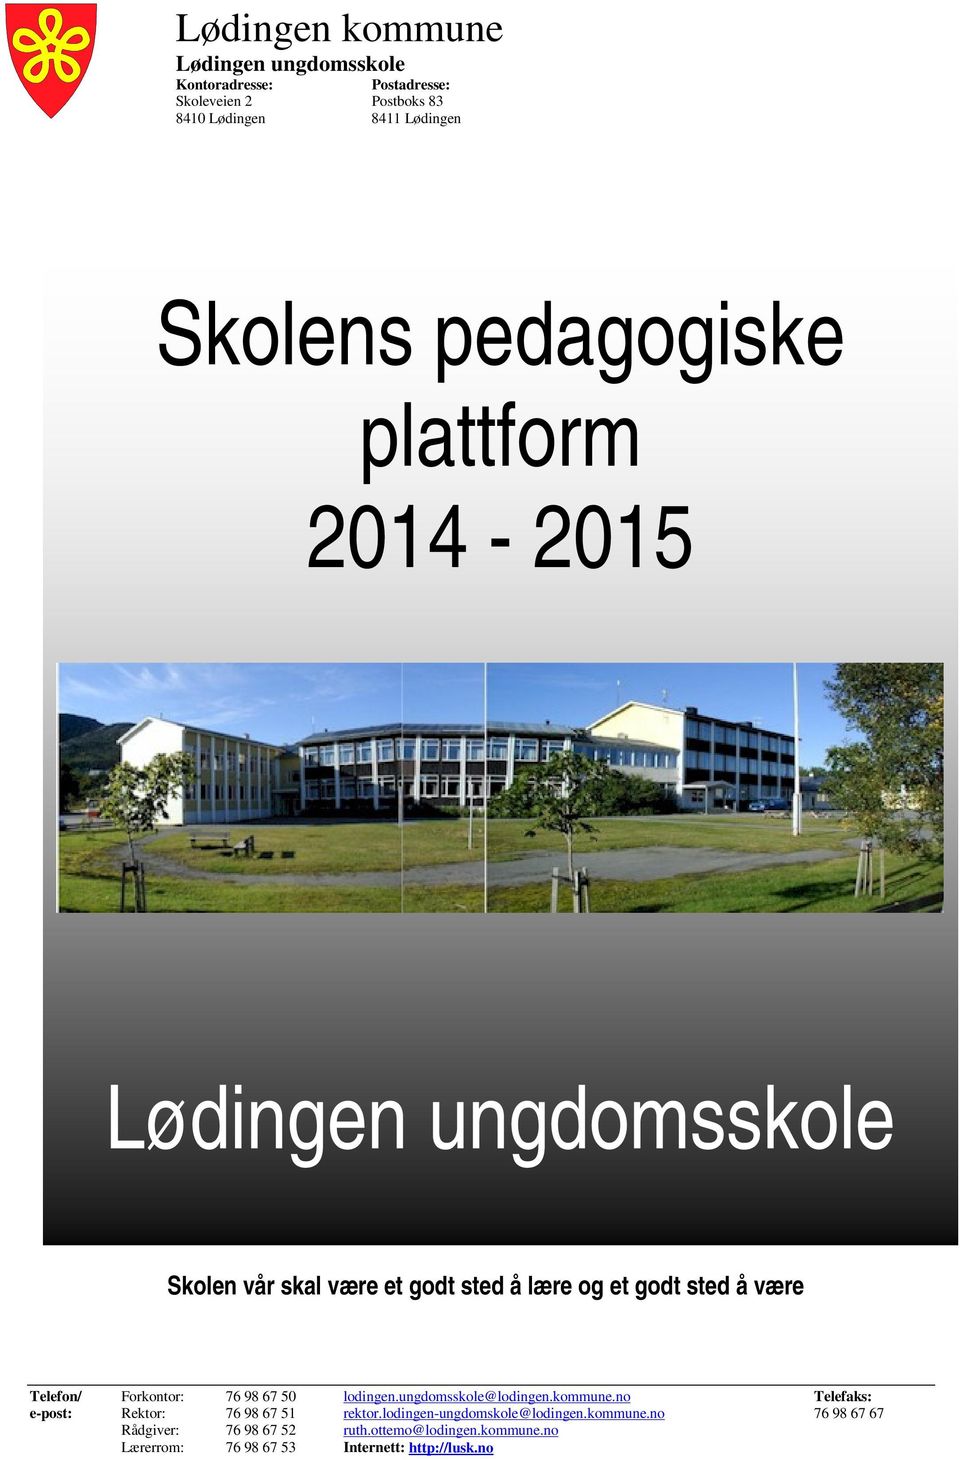 lodingen.ungdomsskole@lodingen.kommune.no Telefaks: e-post: Rektor: 76 98 67 51 rektor.lodingen-ungdomskole@lodingen.